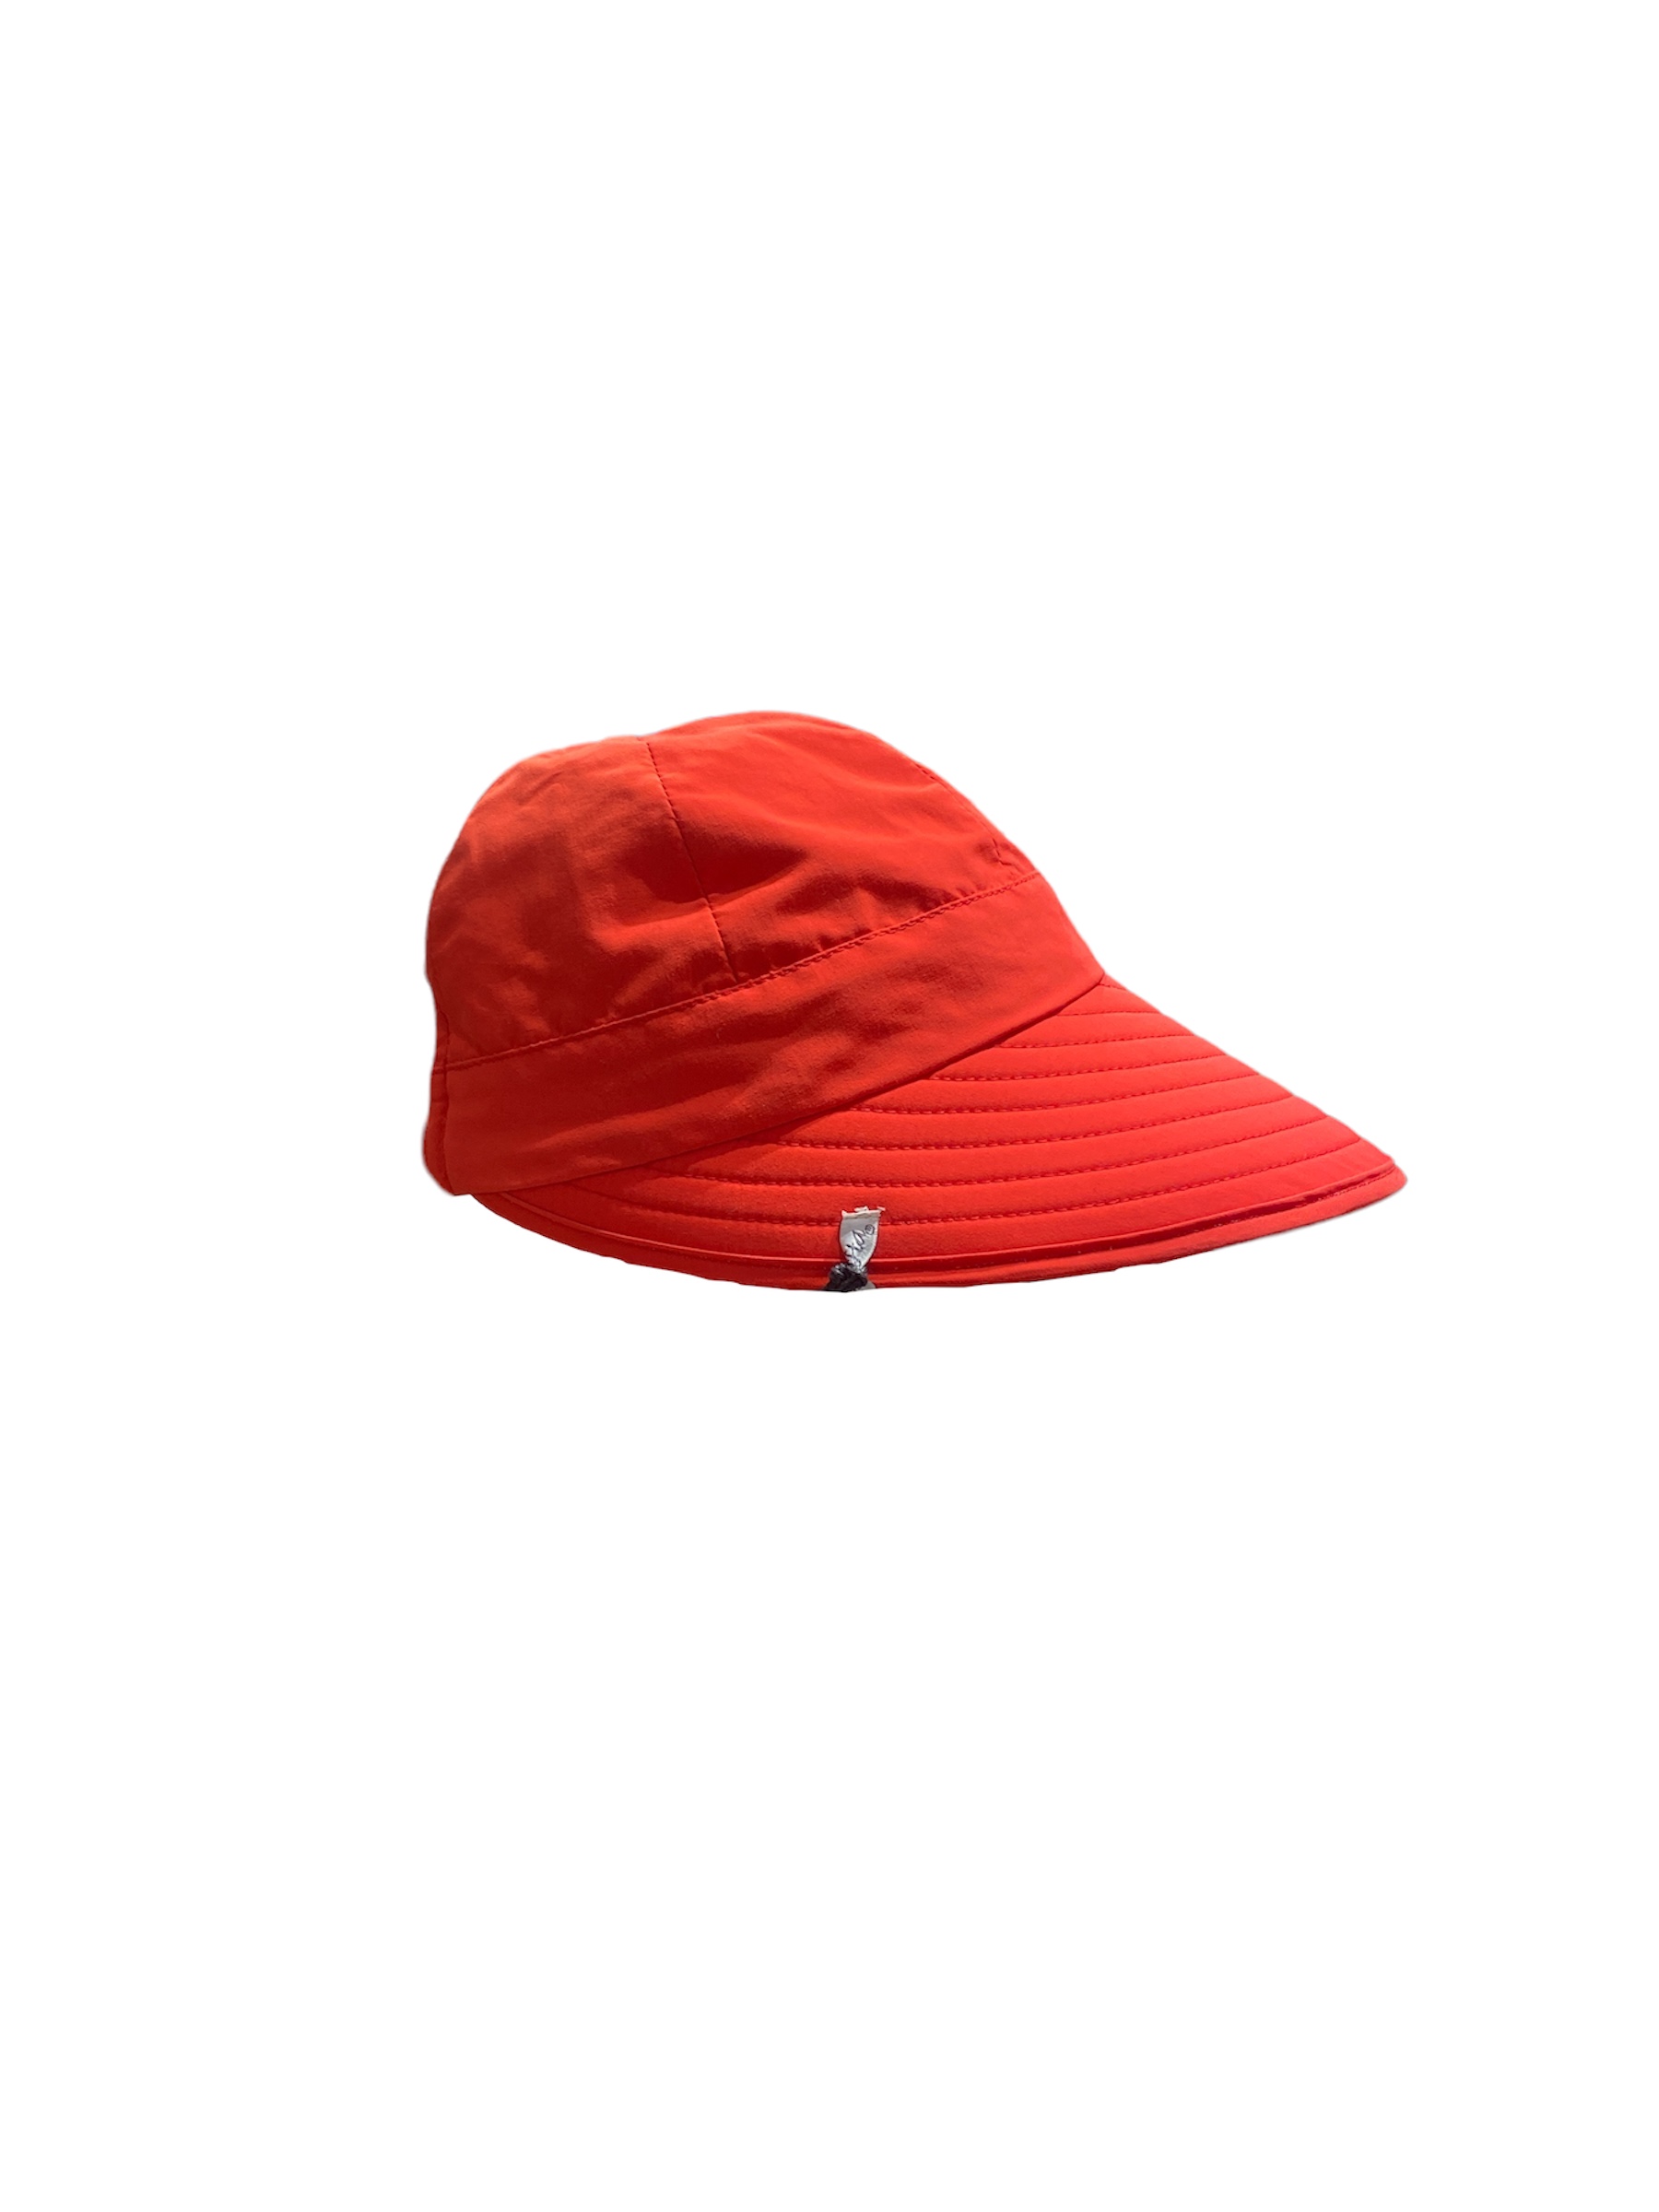 casquette zenou MTM rouge, disponible en taille unique